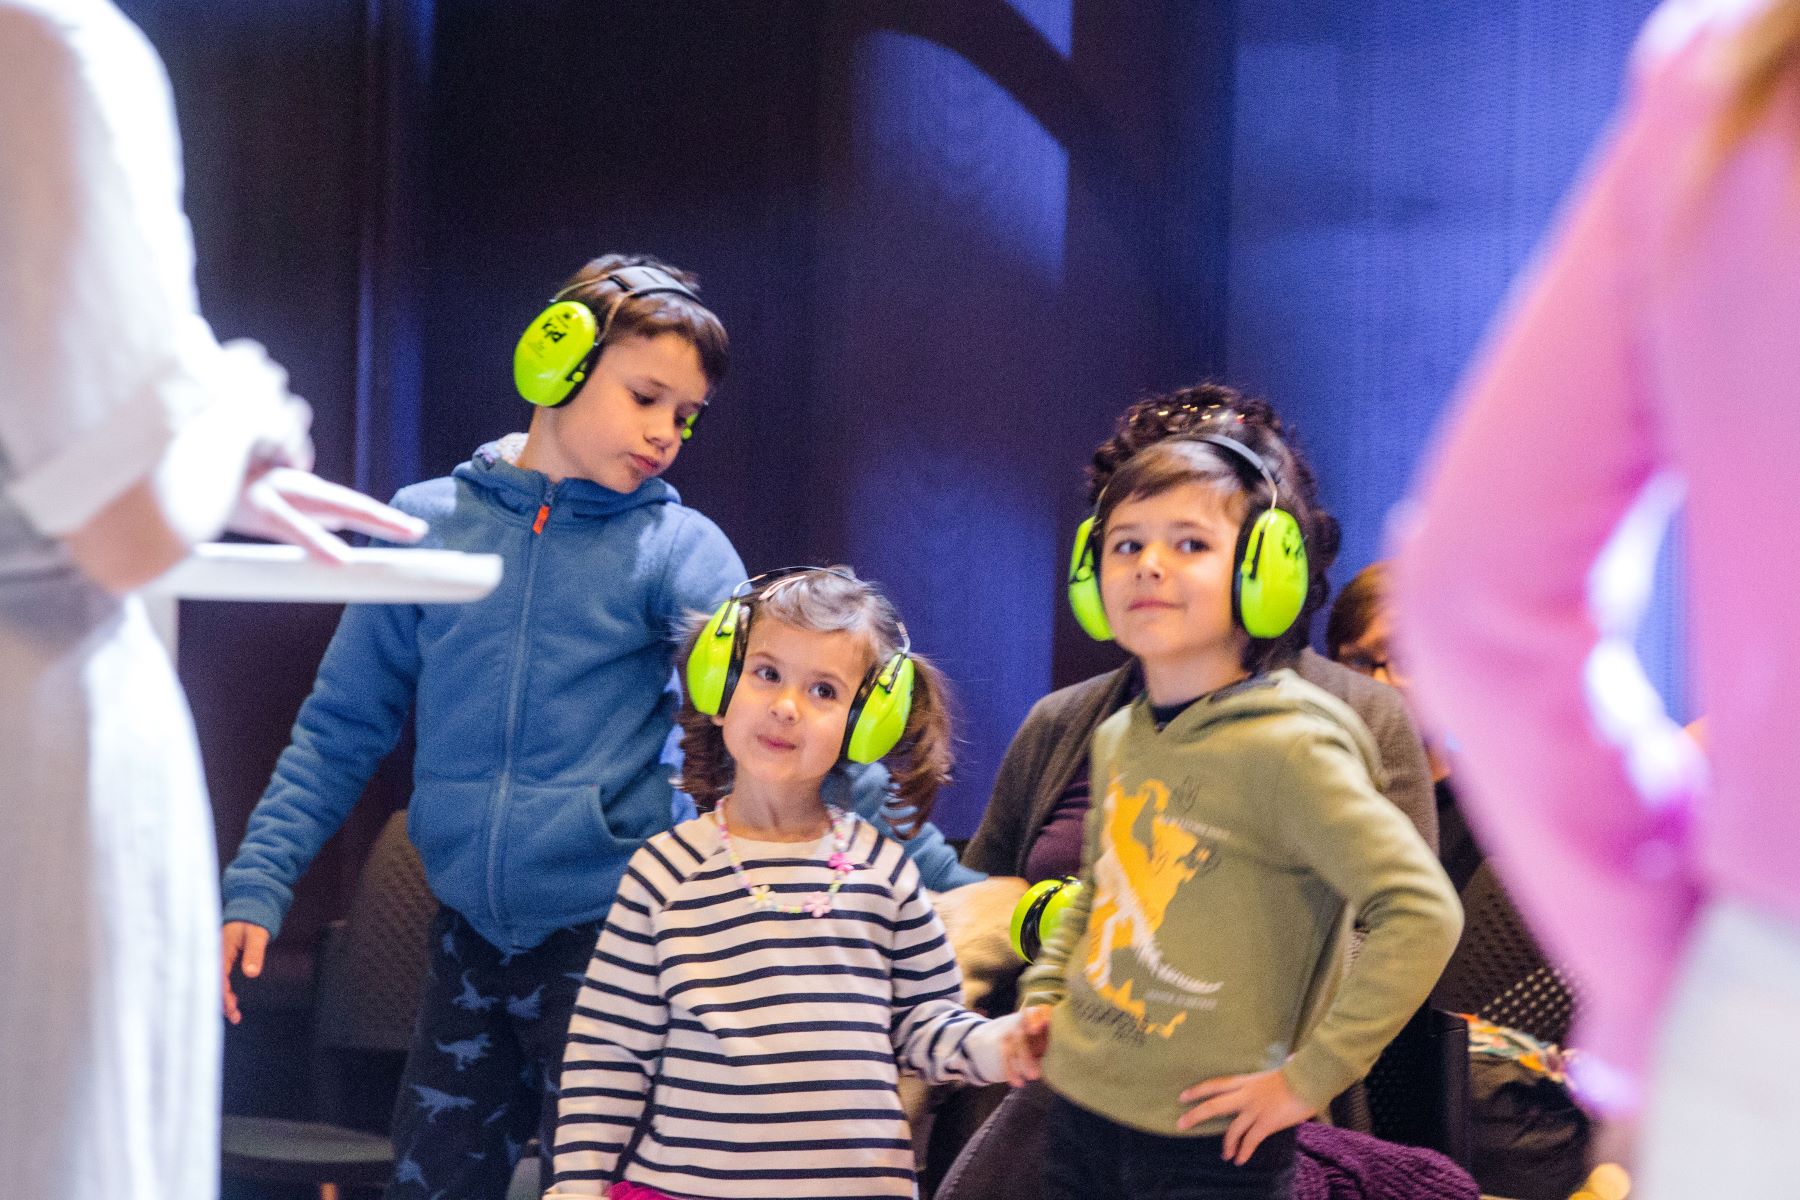 Troje dzieci w zielonych słuchawkach na uszach.